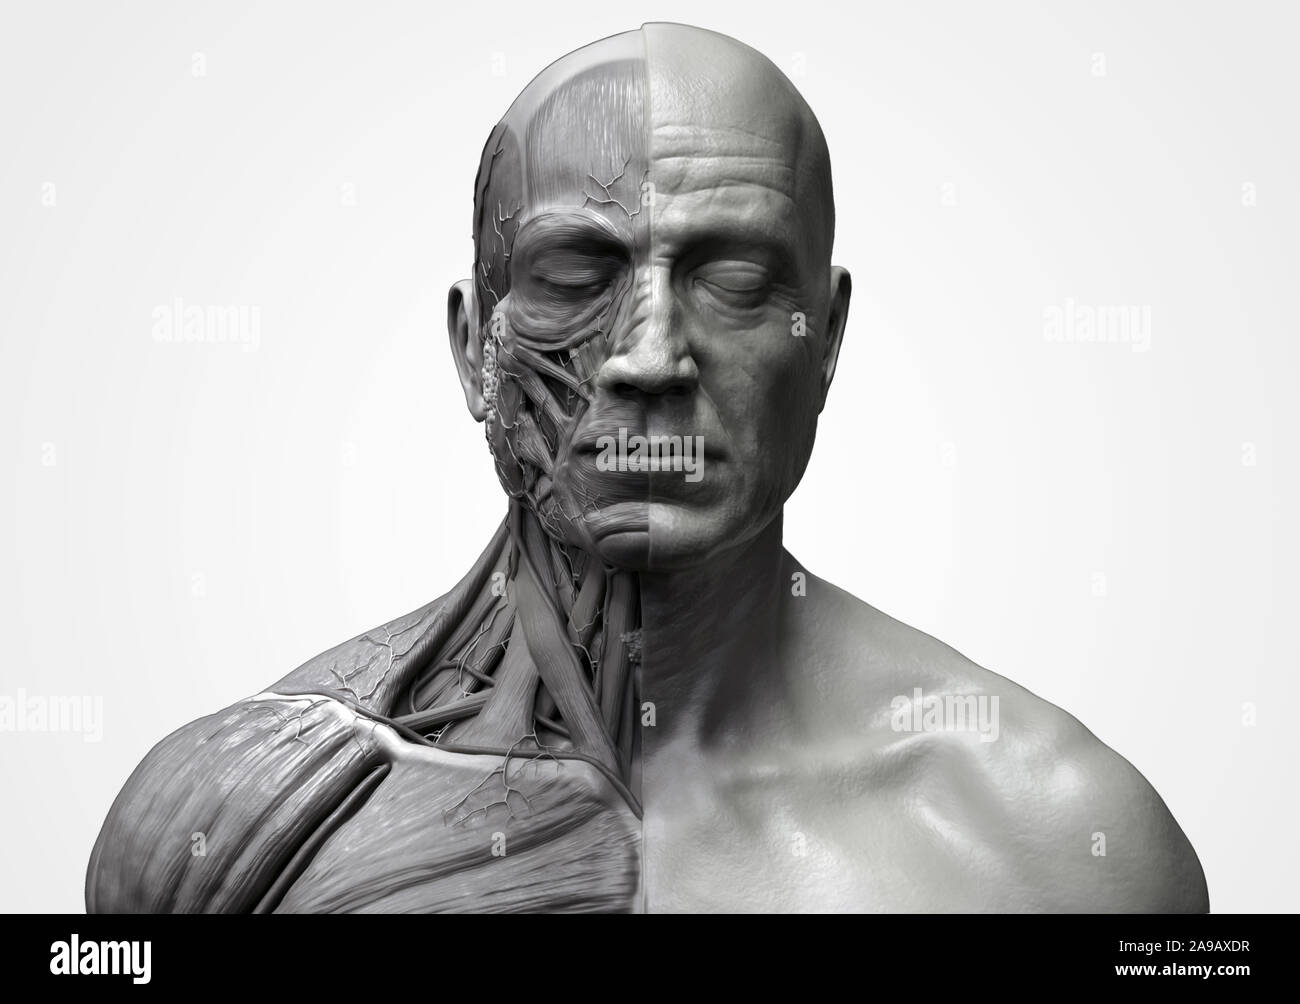 Les muscles de l'anatomie du corps humain structure d'un homme, vue de face Vue de côté et la perspective , fond rendu 3D Banque D'Images